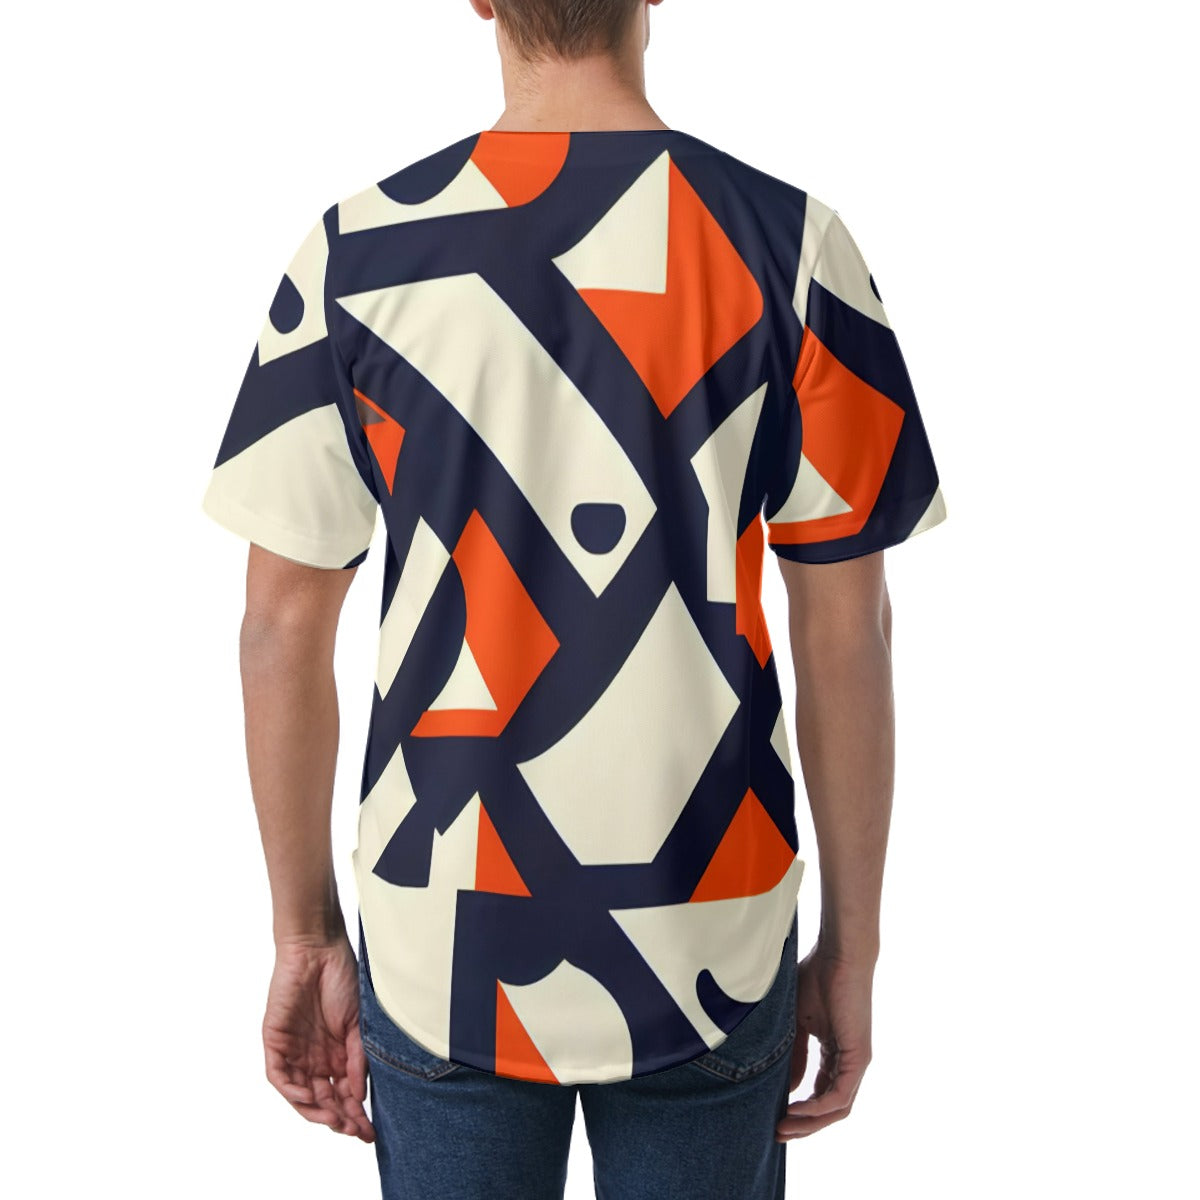 All-Over Print Men's Short Sleeve Baseball Jersey|KPO18